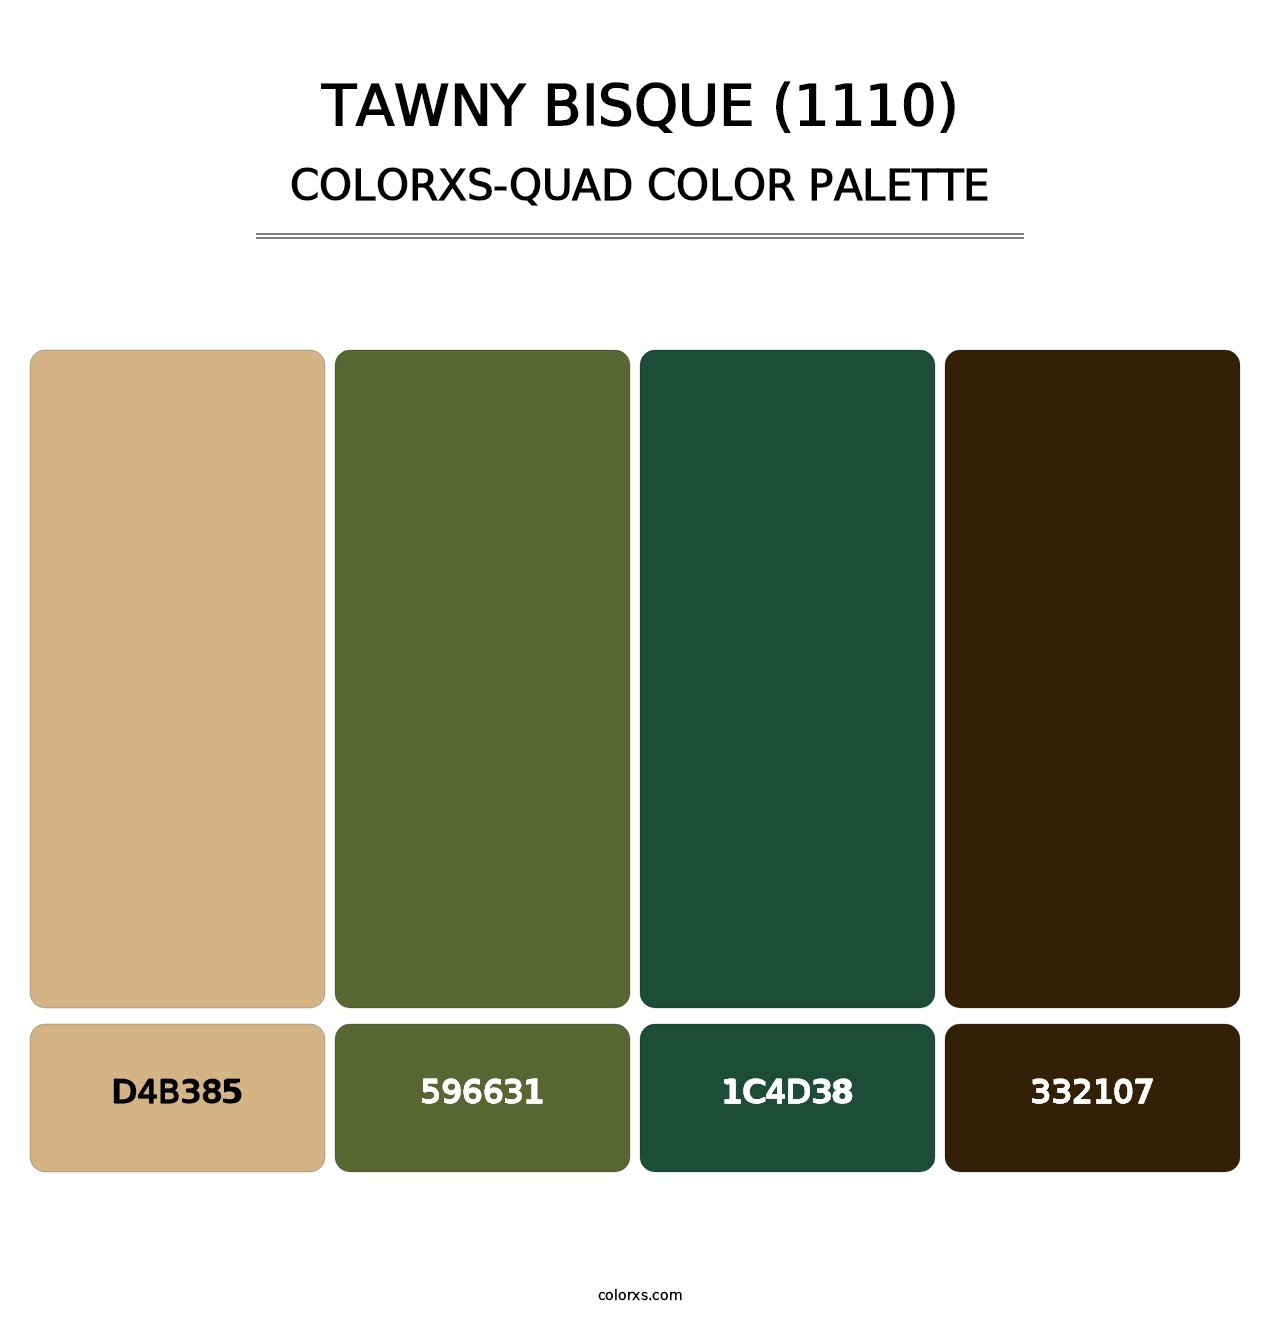 Tawny Bisque (1110) - Colorxs Quad Palette